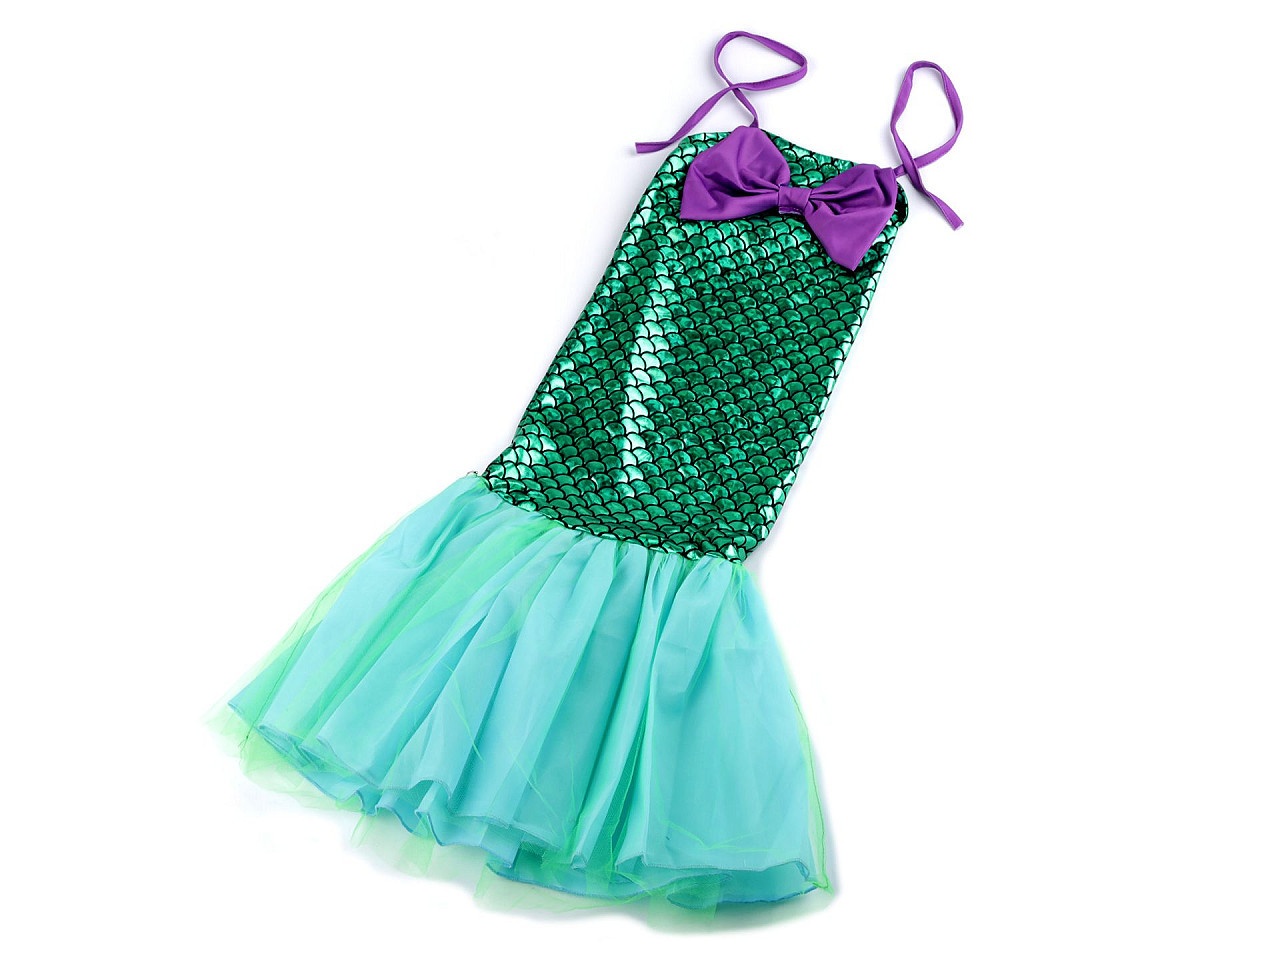 Karnevalový kostým - mořská panna, barva 3 (vel. L) zelená mořská